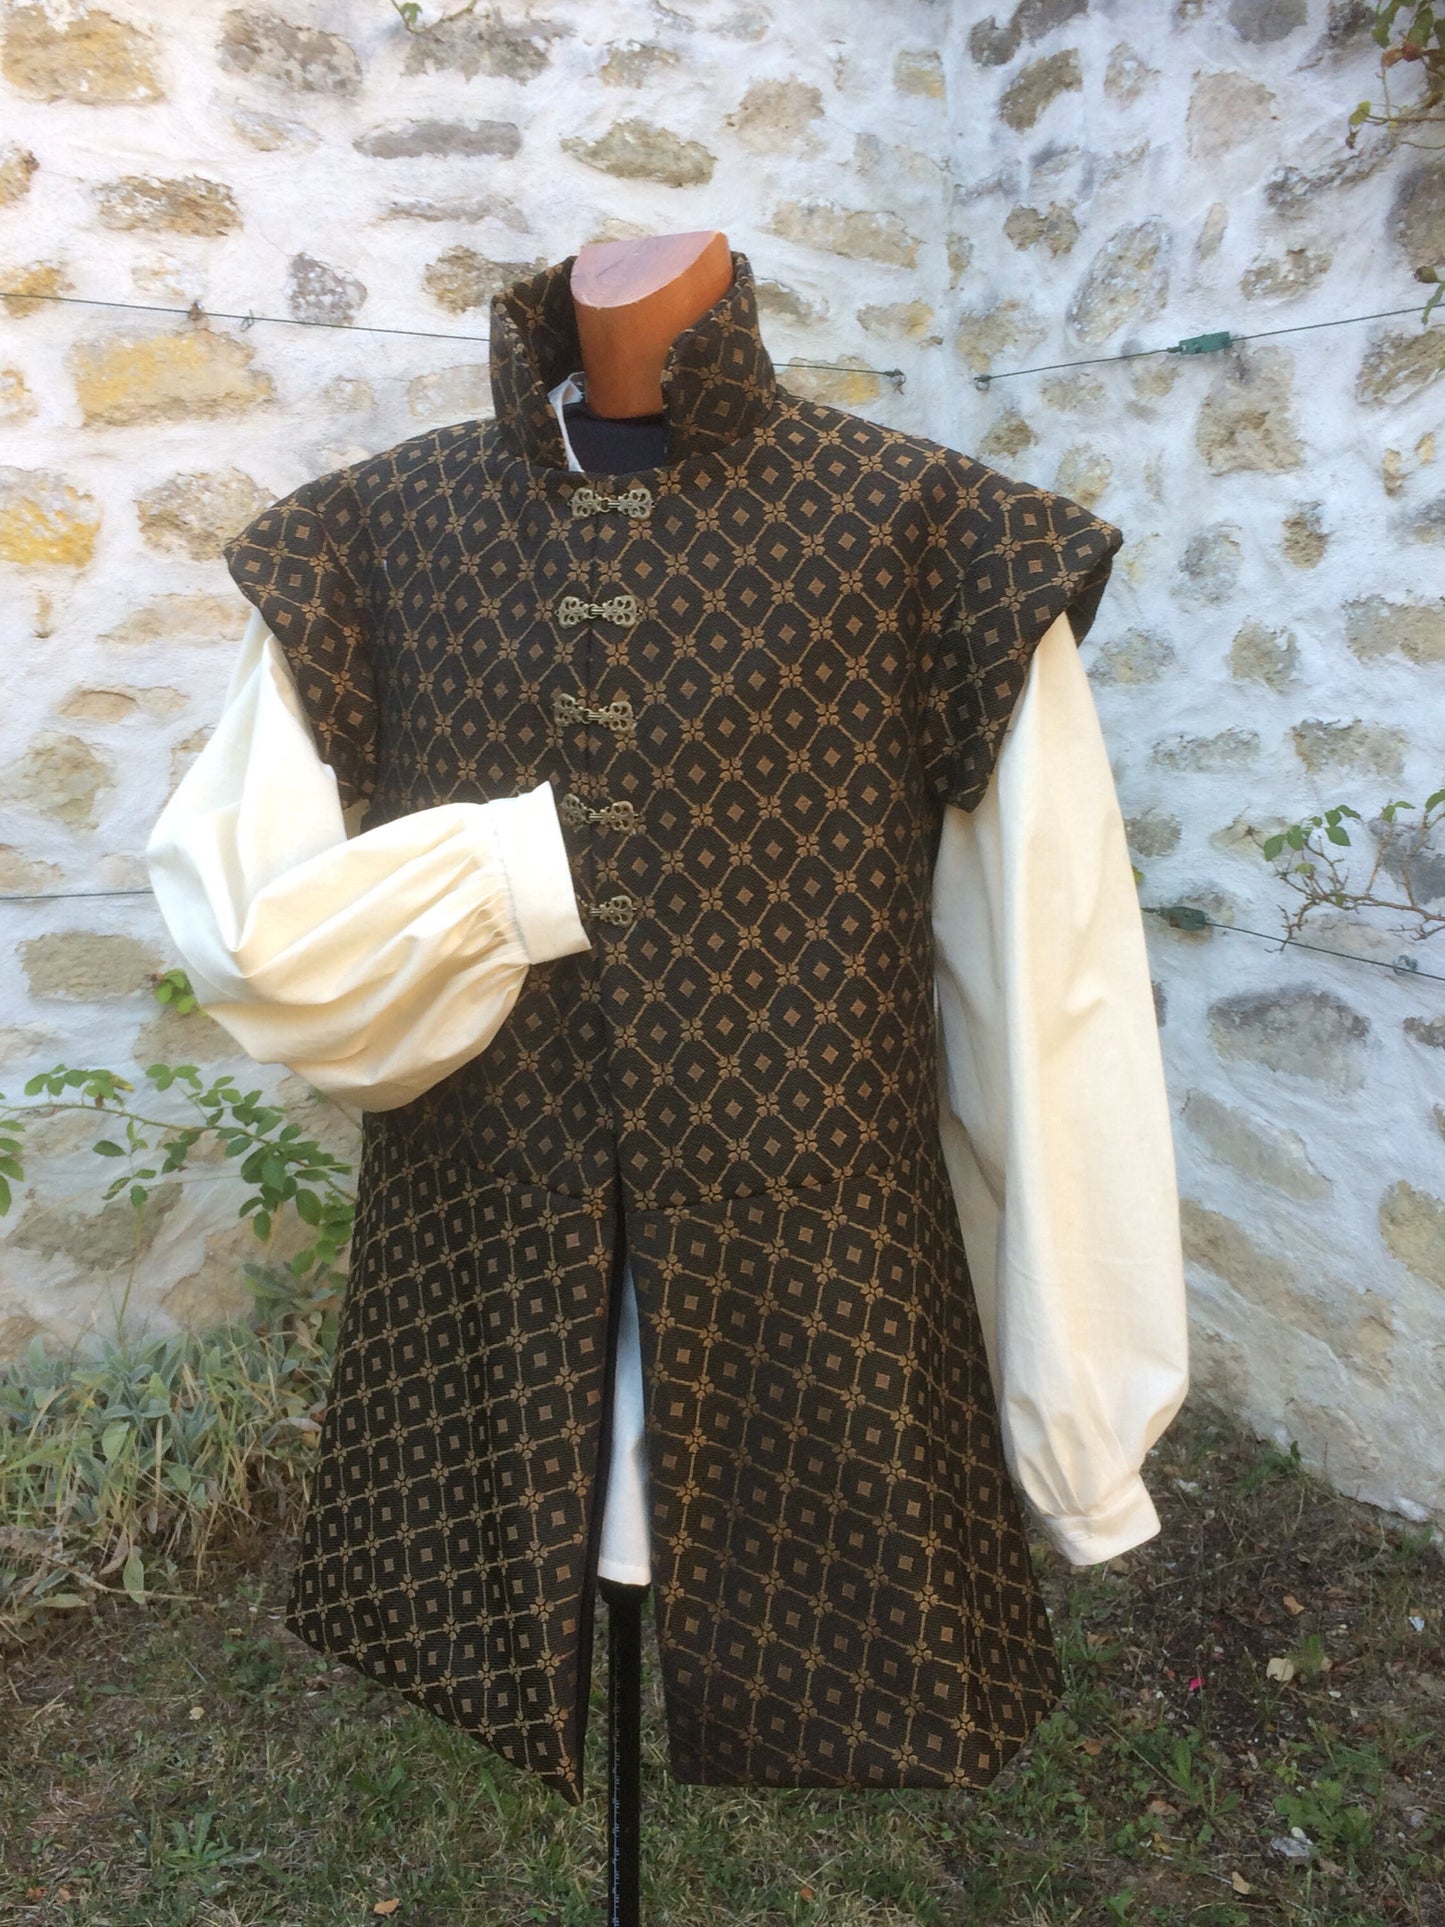 Chemise médiévale pour homme en coton écru, chemise pirate ou tunique médiévale, corsaire, Renaissance